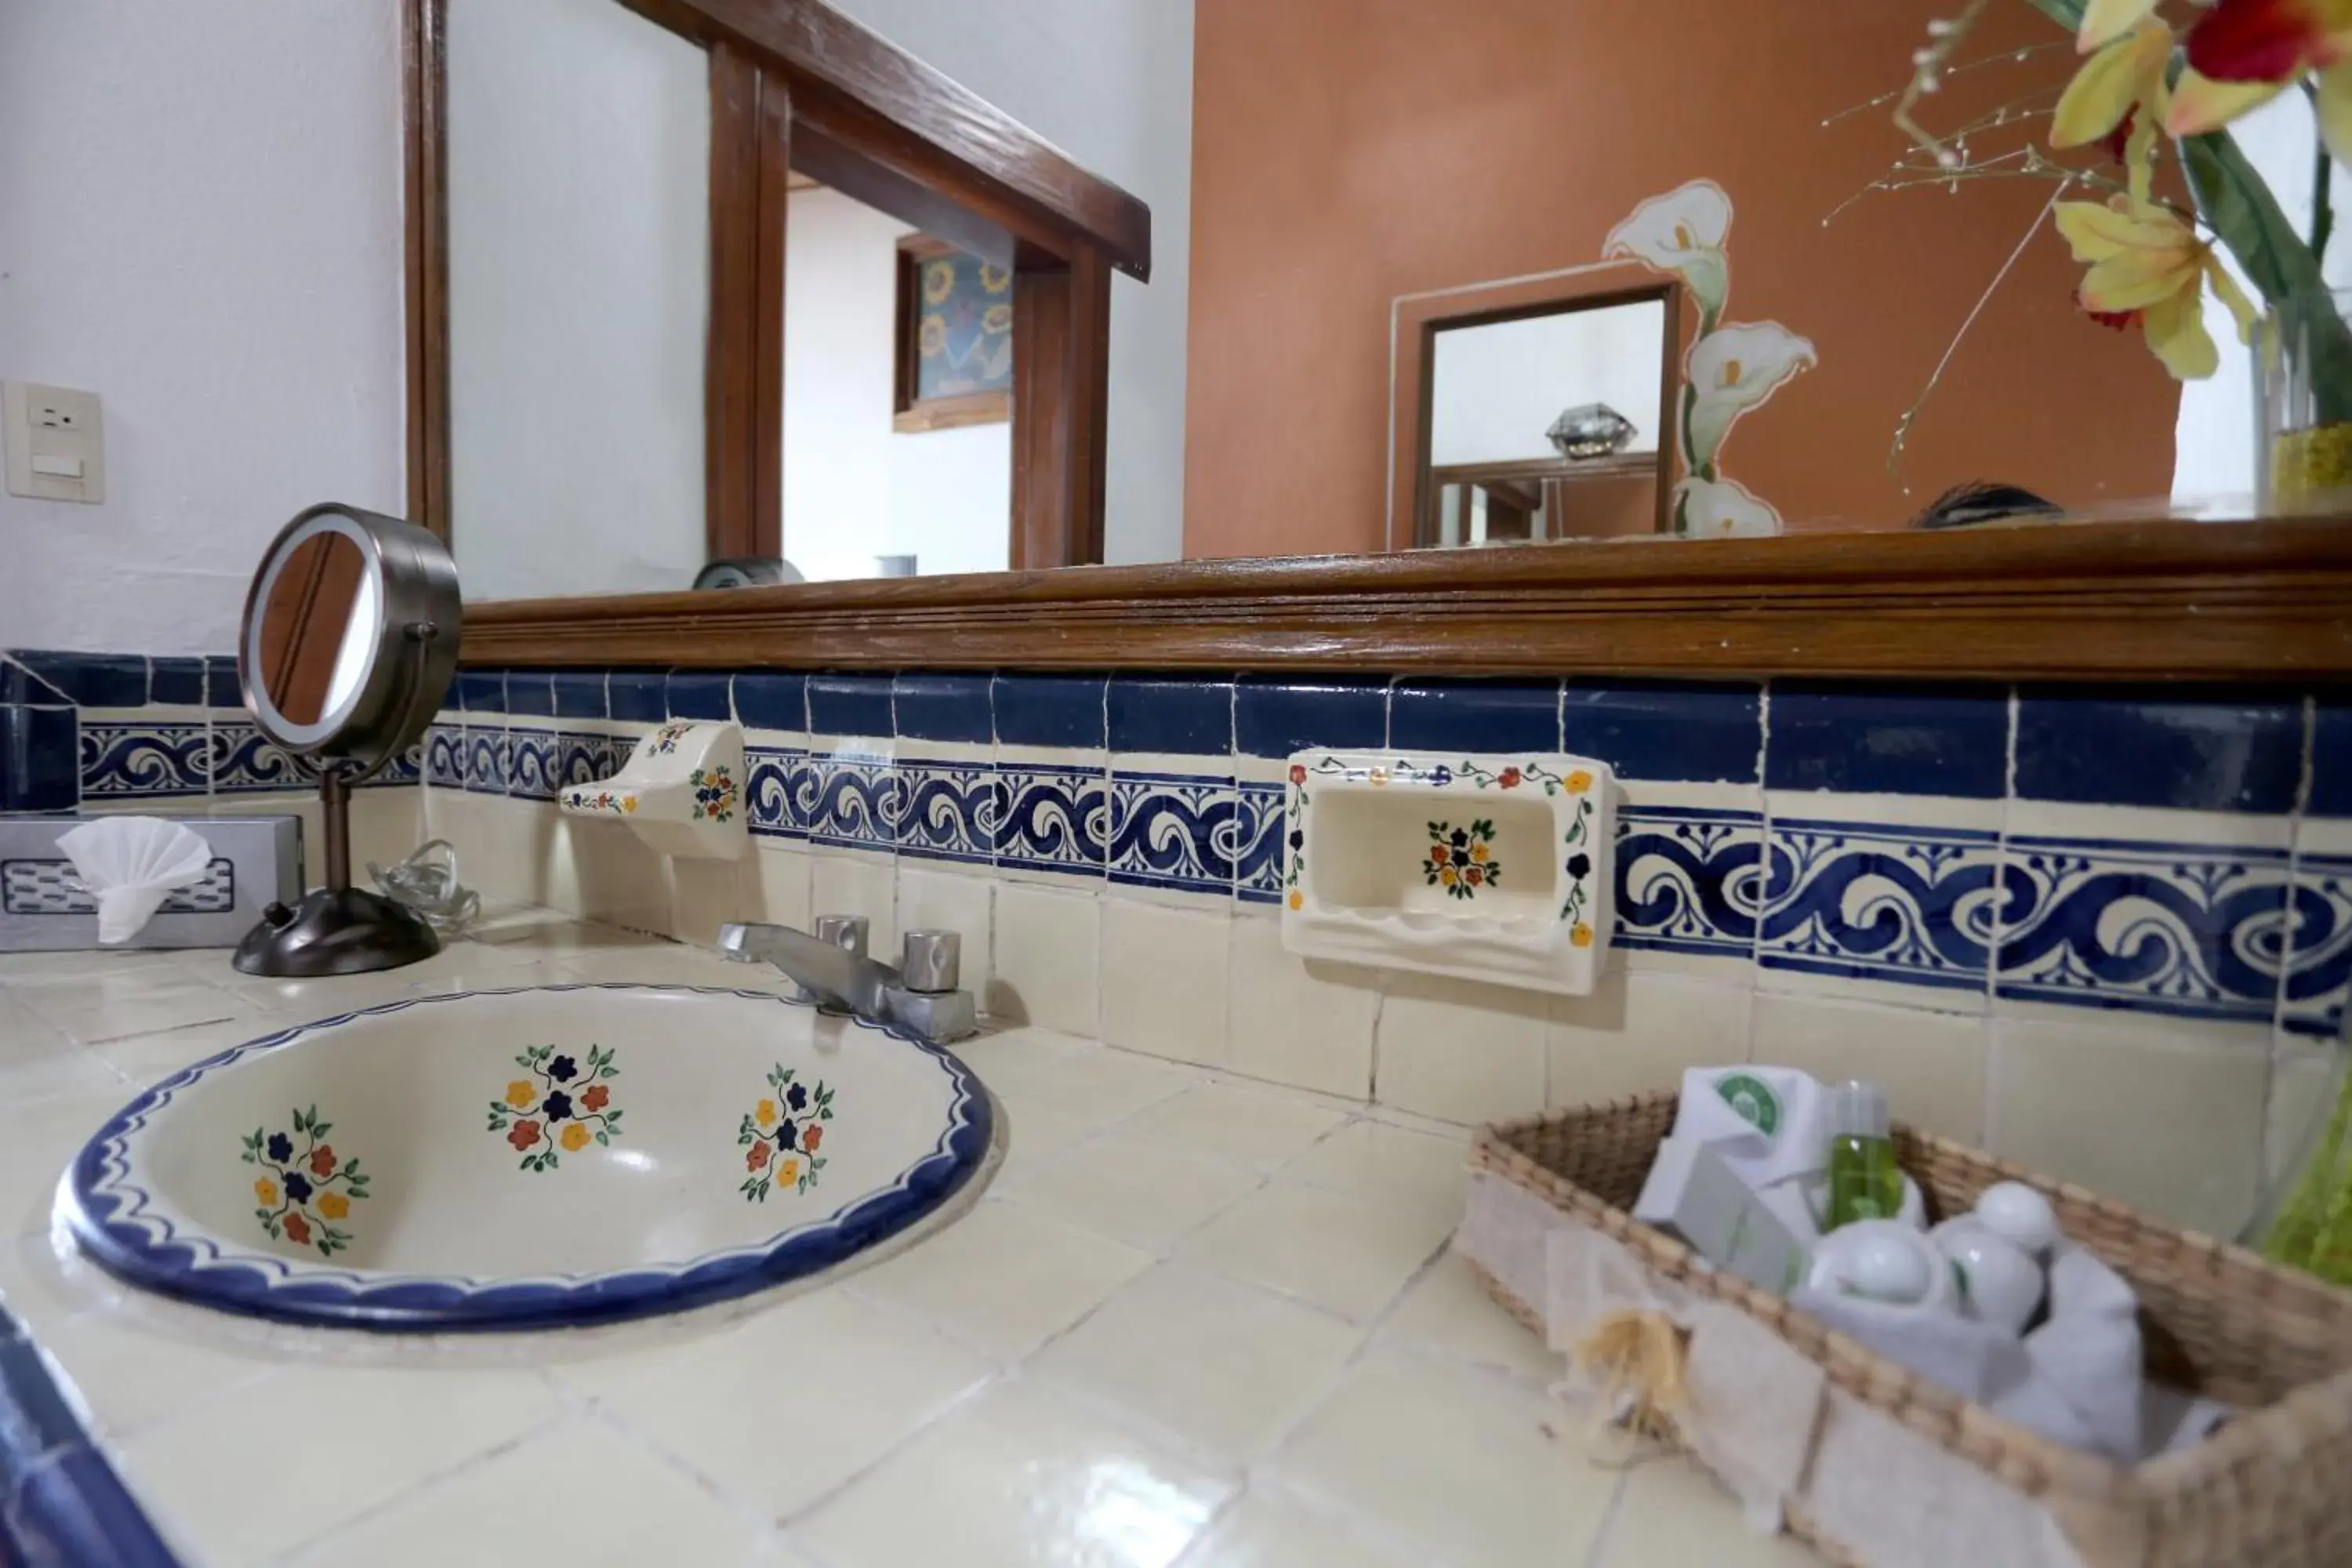 Toilet, Bathroom in Villa San Jose Hotel & Suites